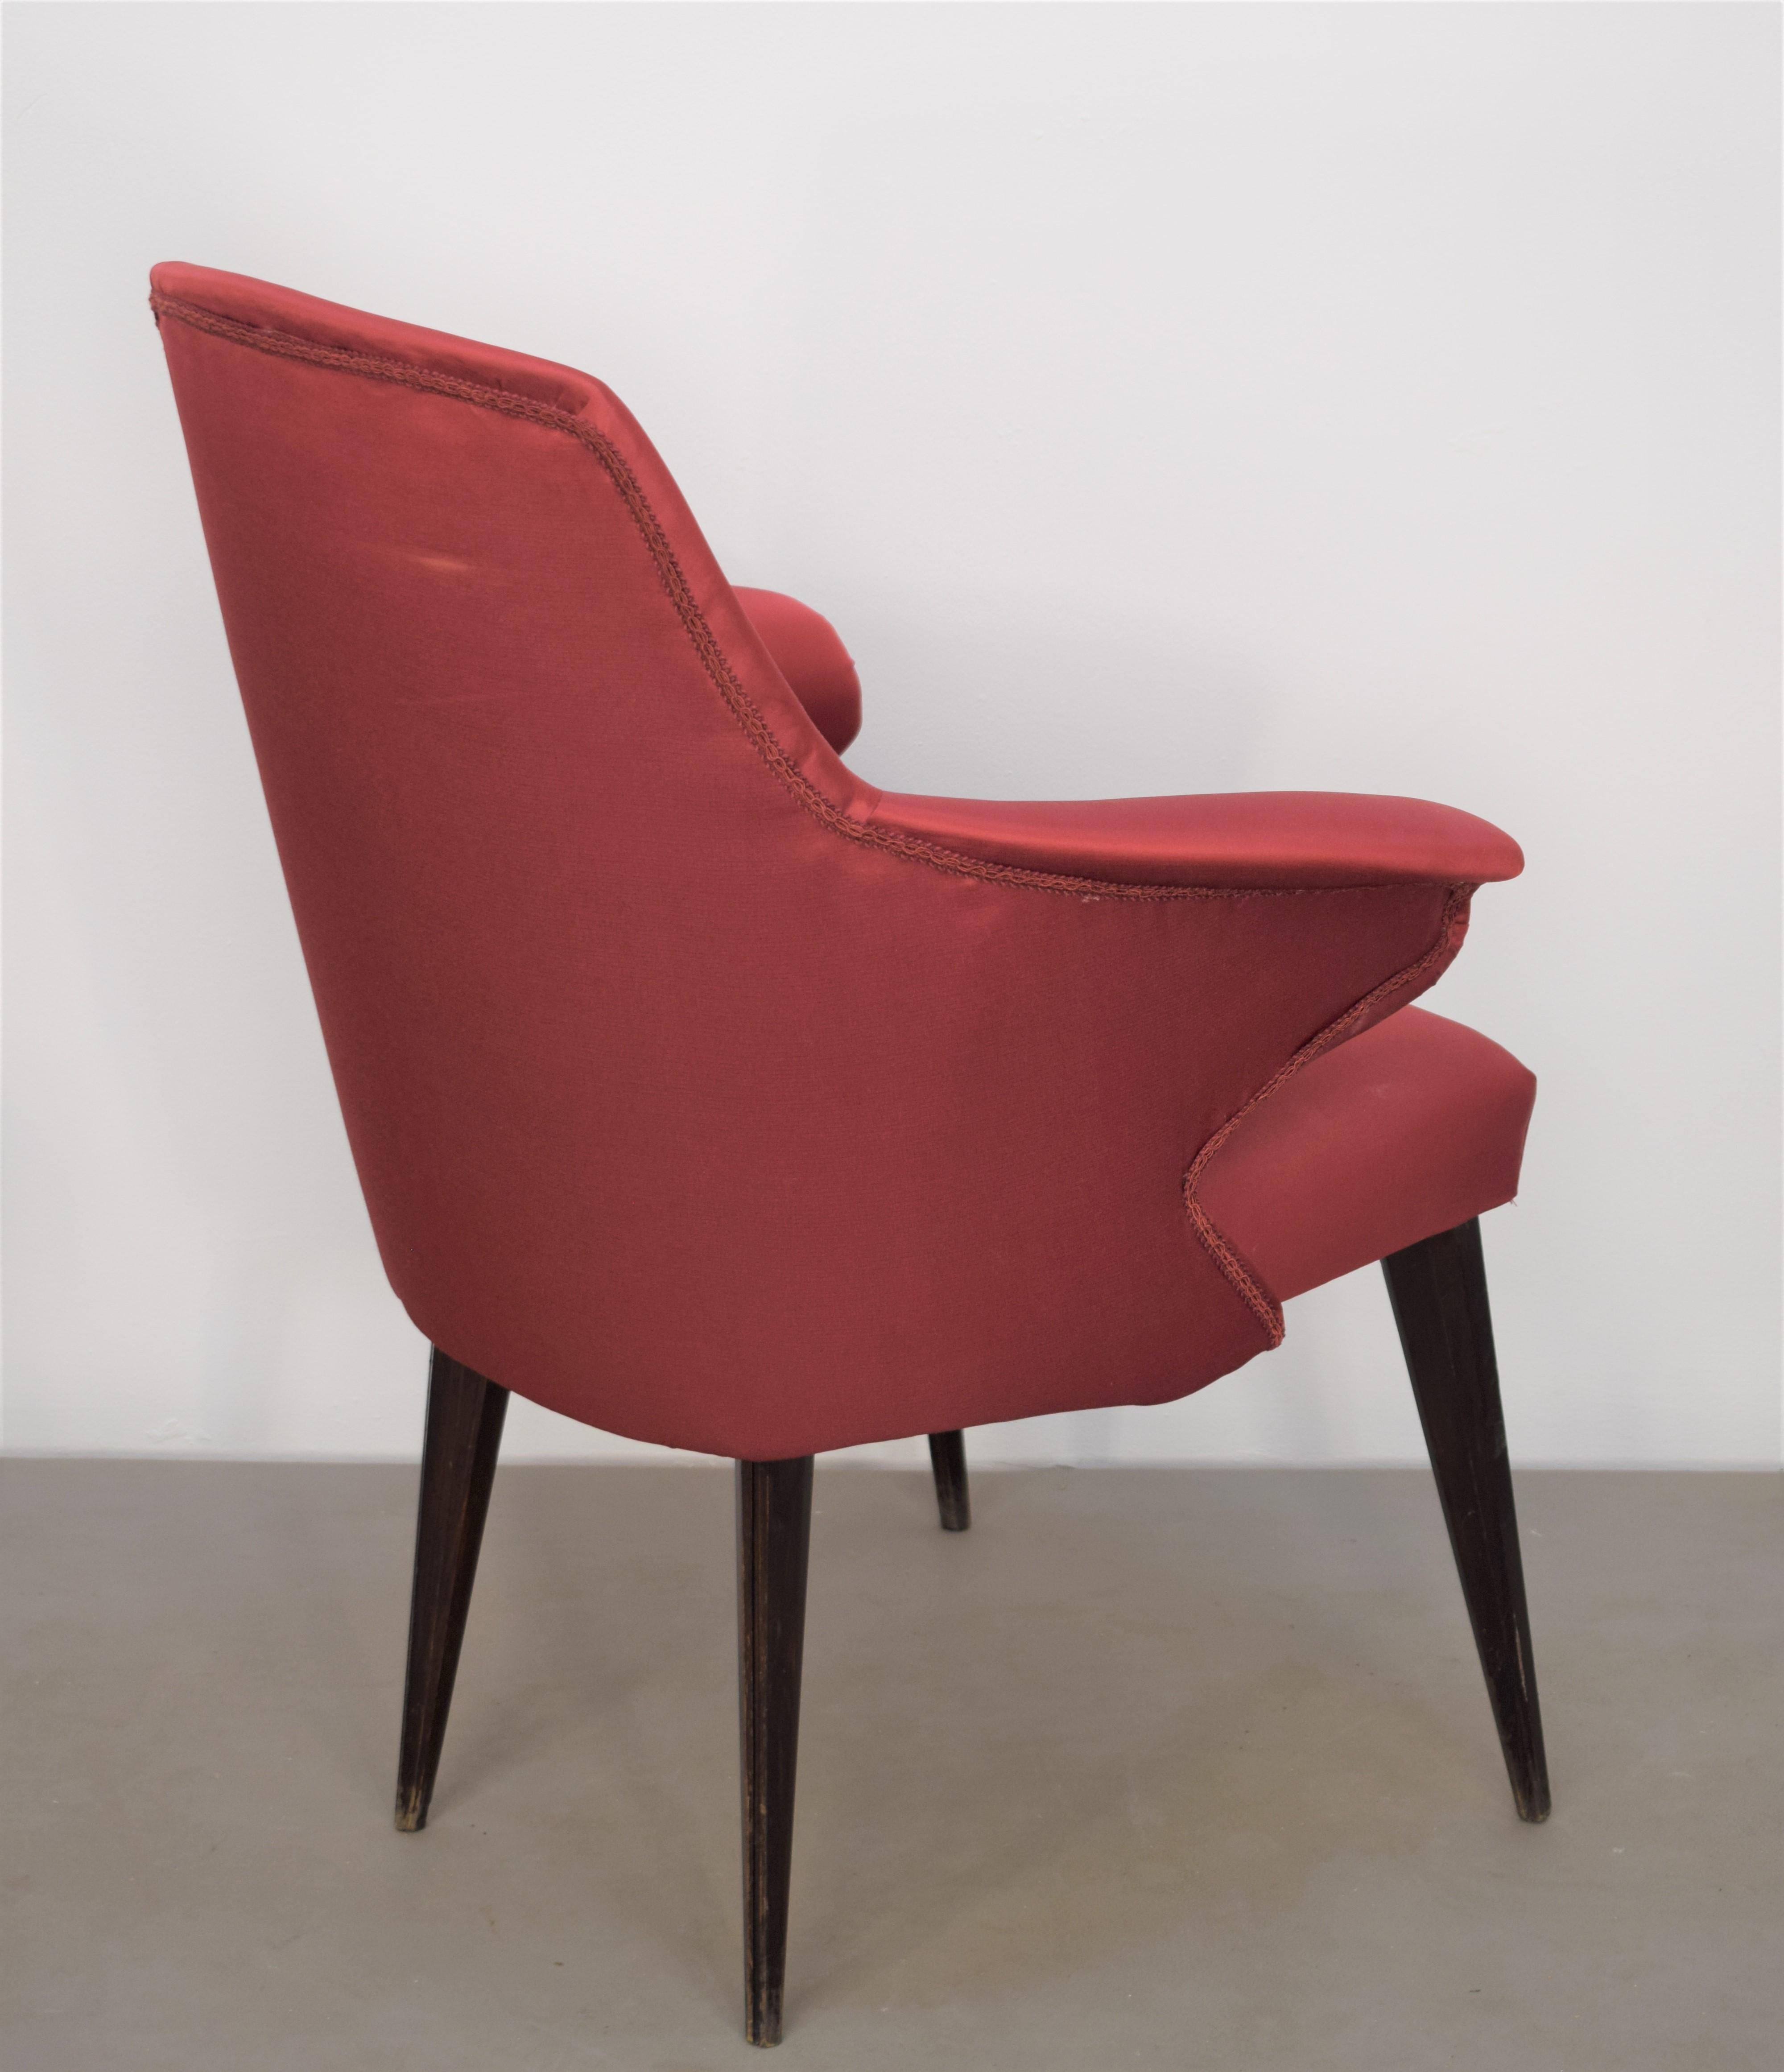 Set of 3 Italian Chairs, Osvaldo Borsani Style, 1960s For Sale 1